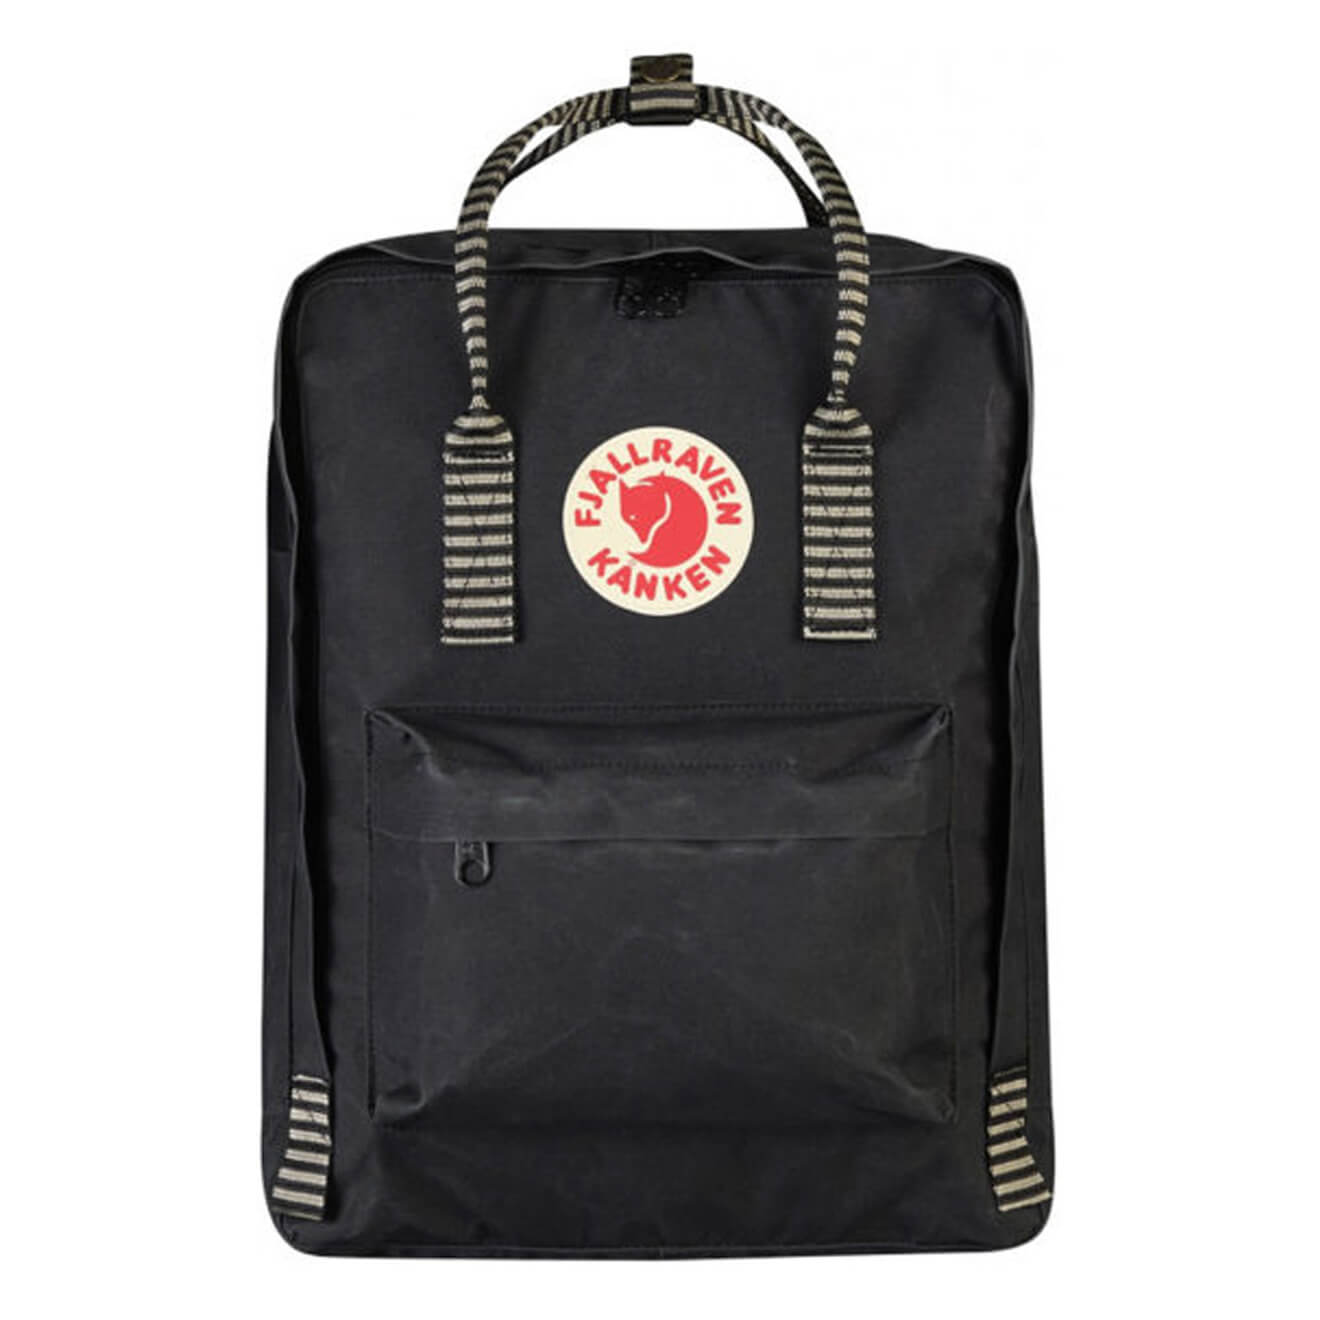 fjallraven kanken black striped backpack